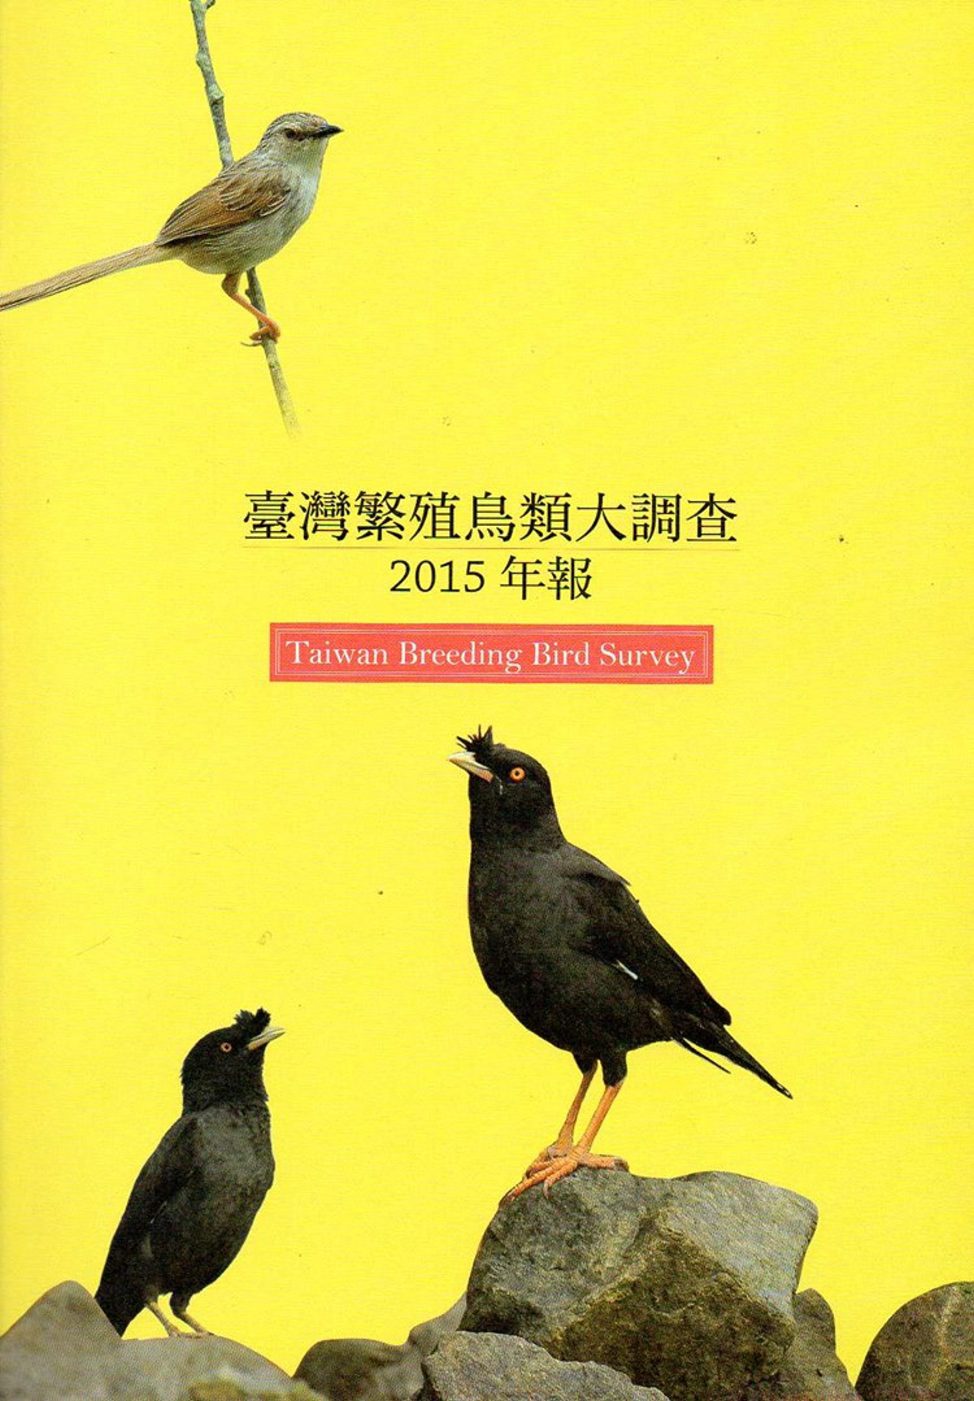 臺灣繁殖鳥類大調查2015年報